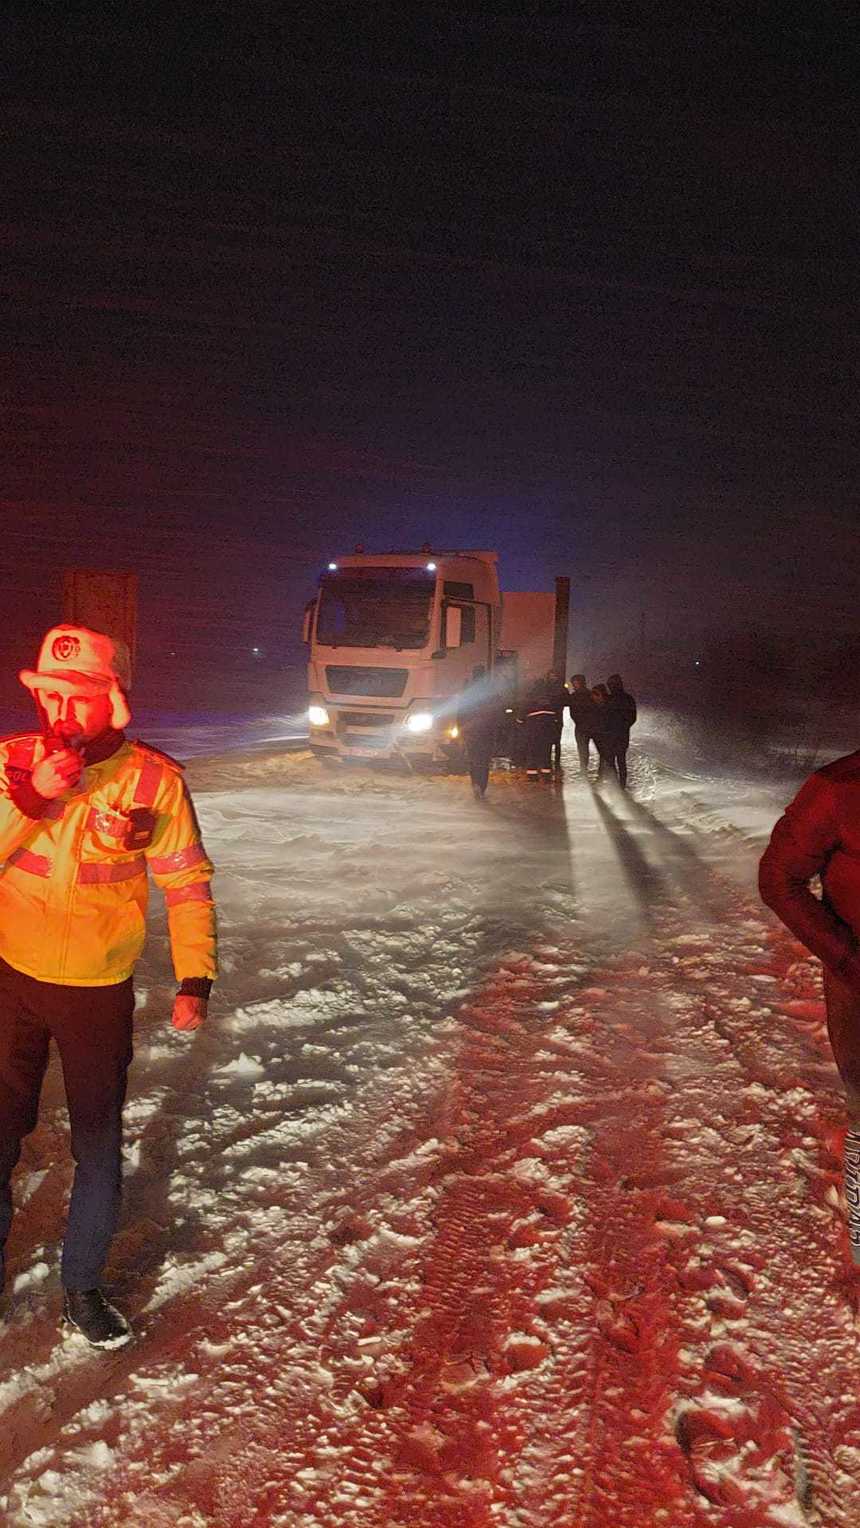 CNAIR: Circulaţie închisă pe DN 23B între Măicăneşti şi Ciorăşti, din cauza ninsorii abundente şi a vizibilităţii reduse / S-a reuşit redeschiderea circulaţiei pentru toate categoriile de autovehicule pe autostrada A1 între Cisnădie şi  Boiţa